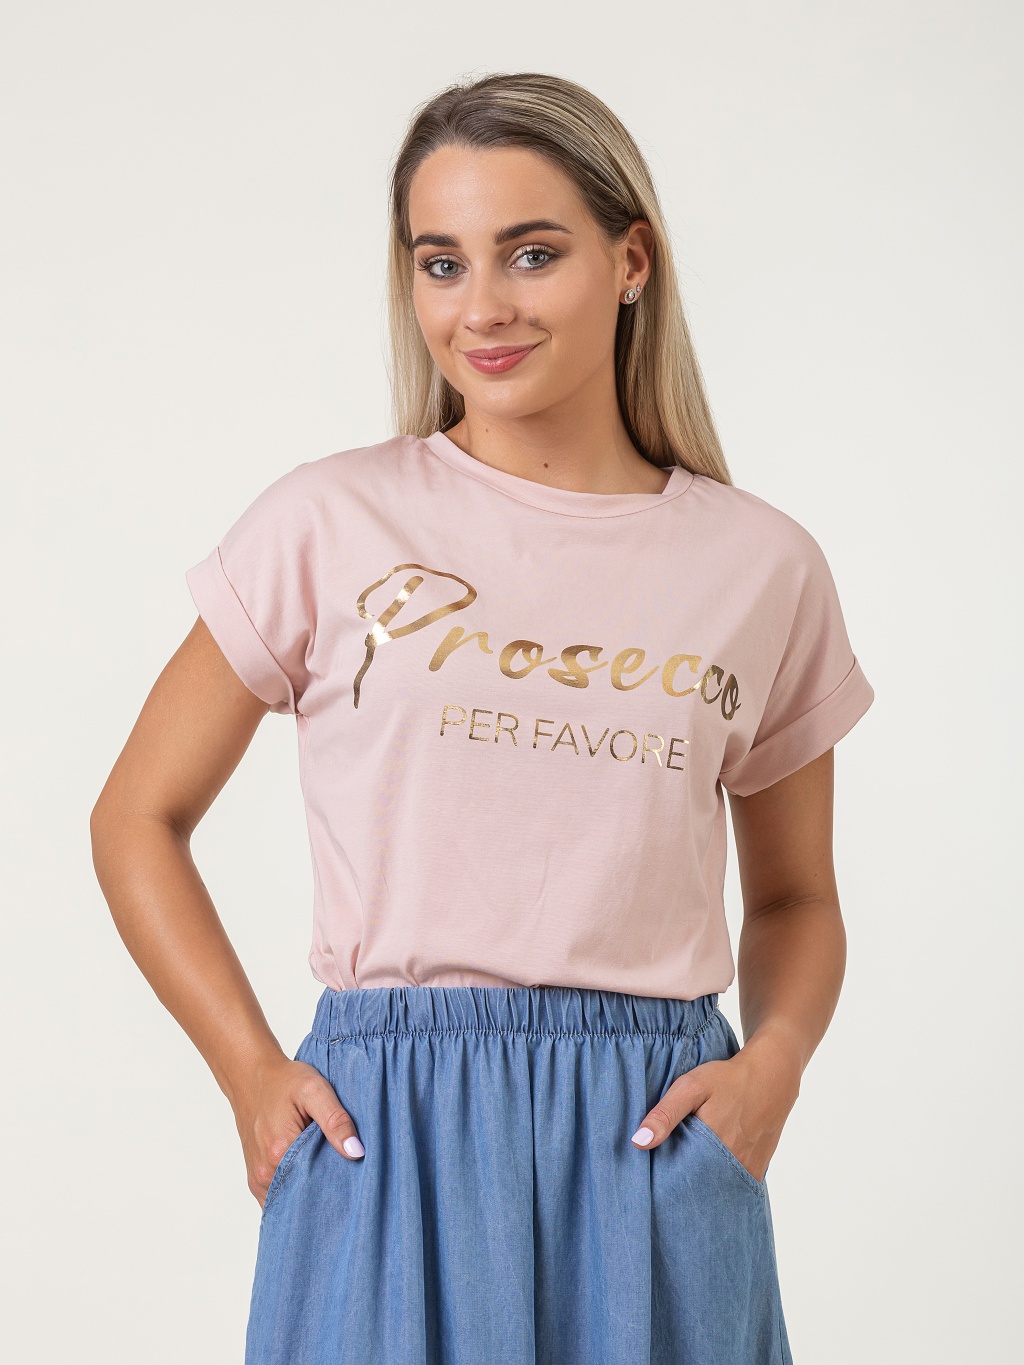 Růžové tričko Regina s nápisem Prosecco